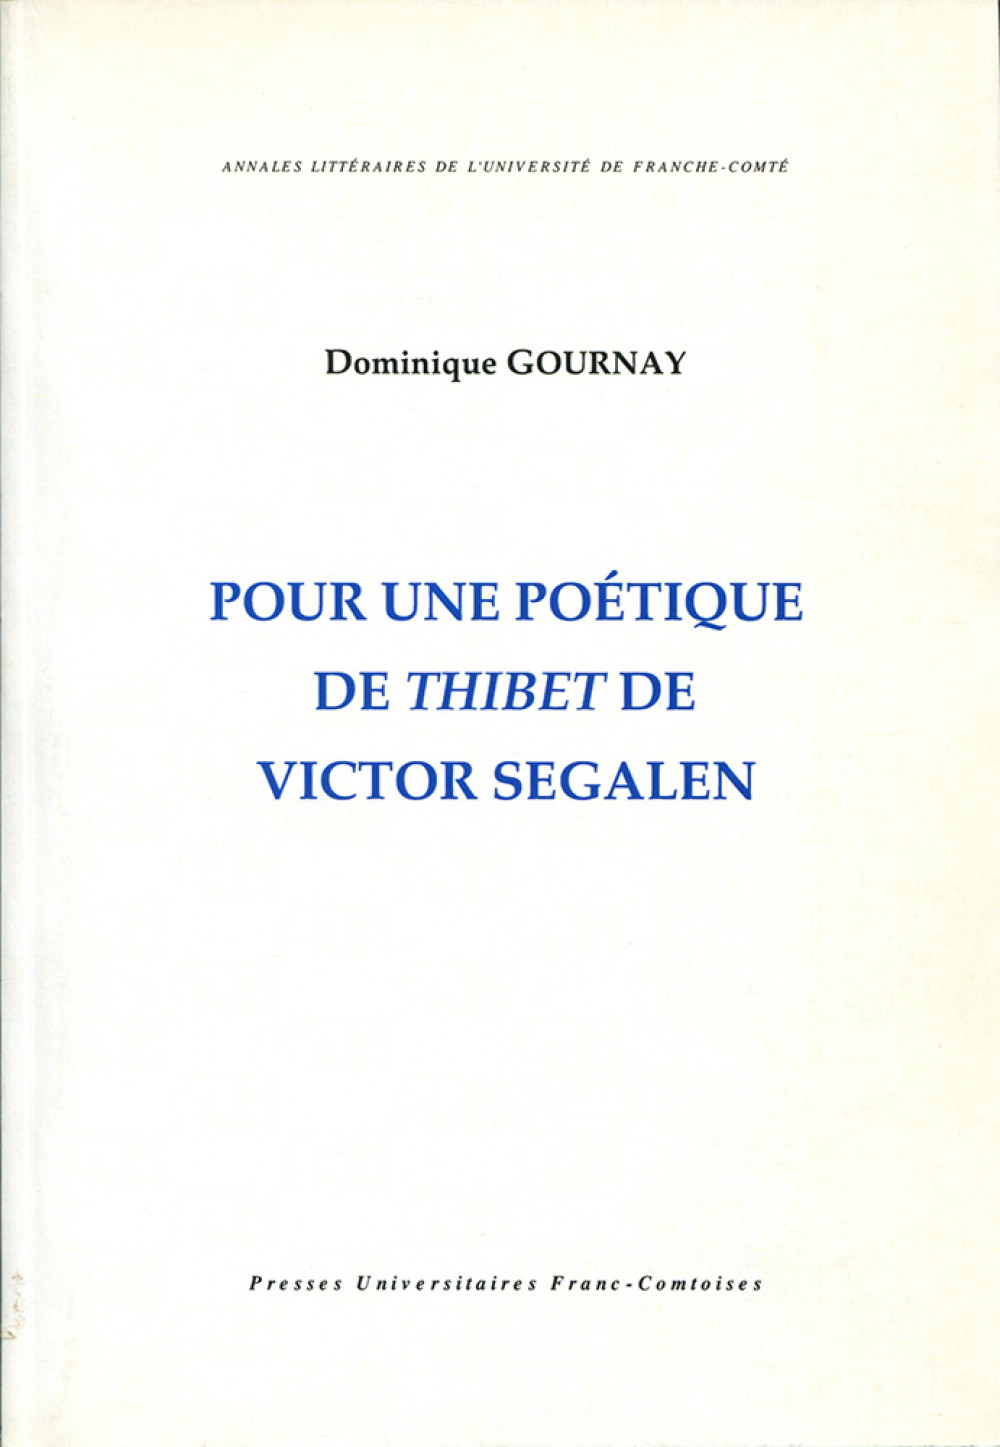 Pour une poétique de Thibet de Victor Segalen